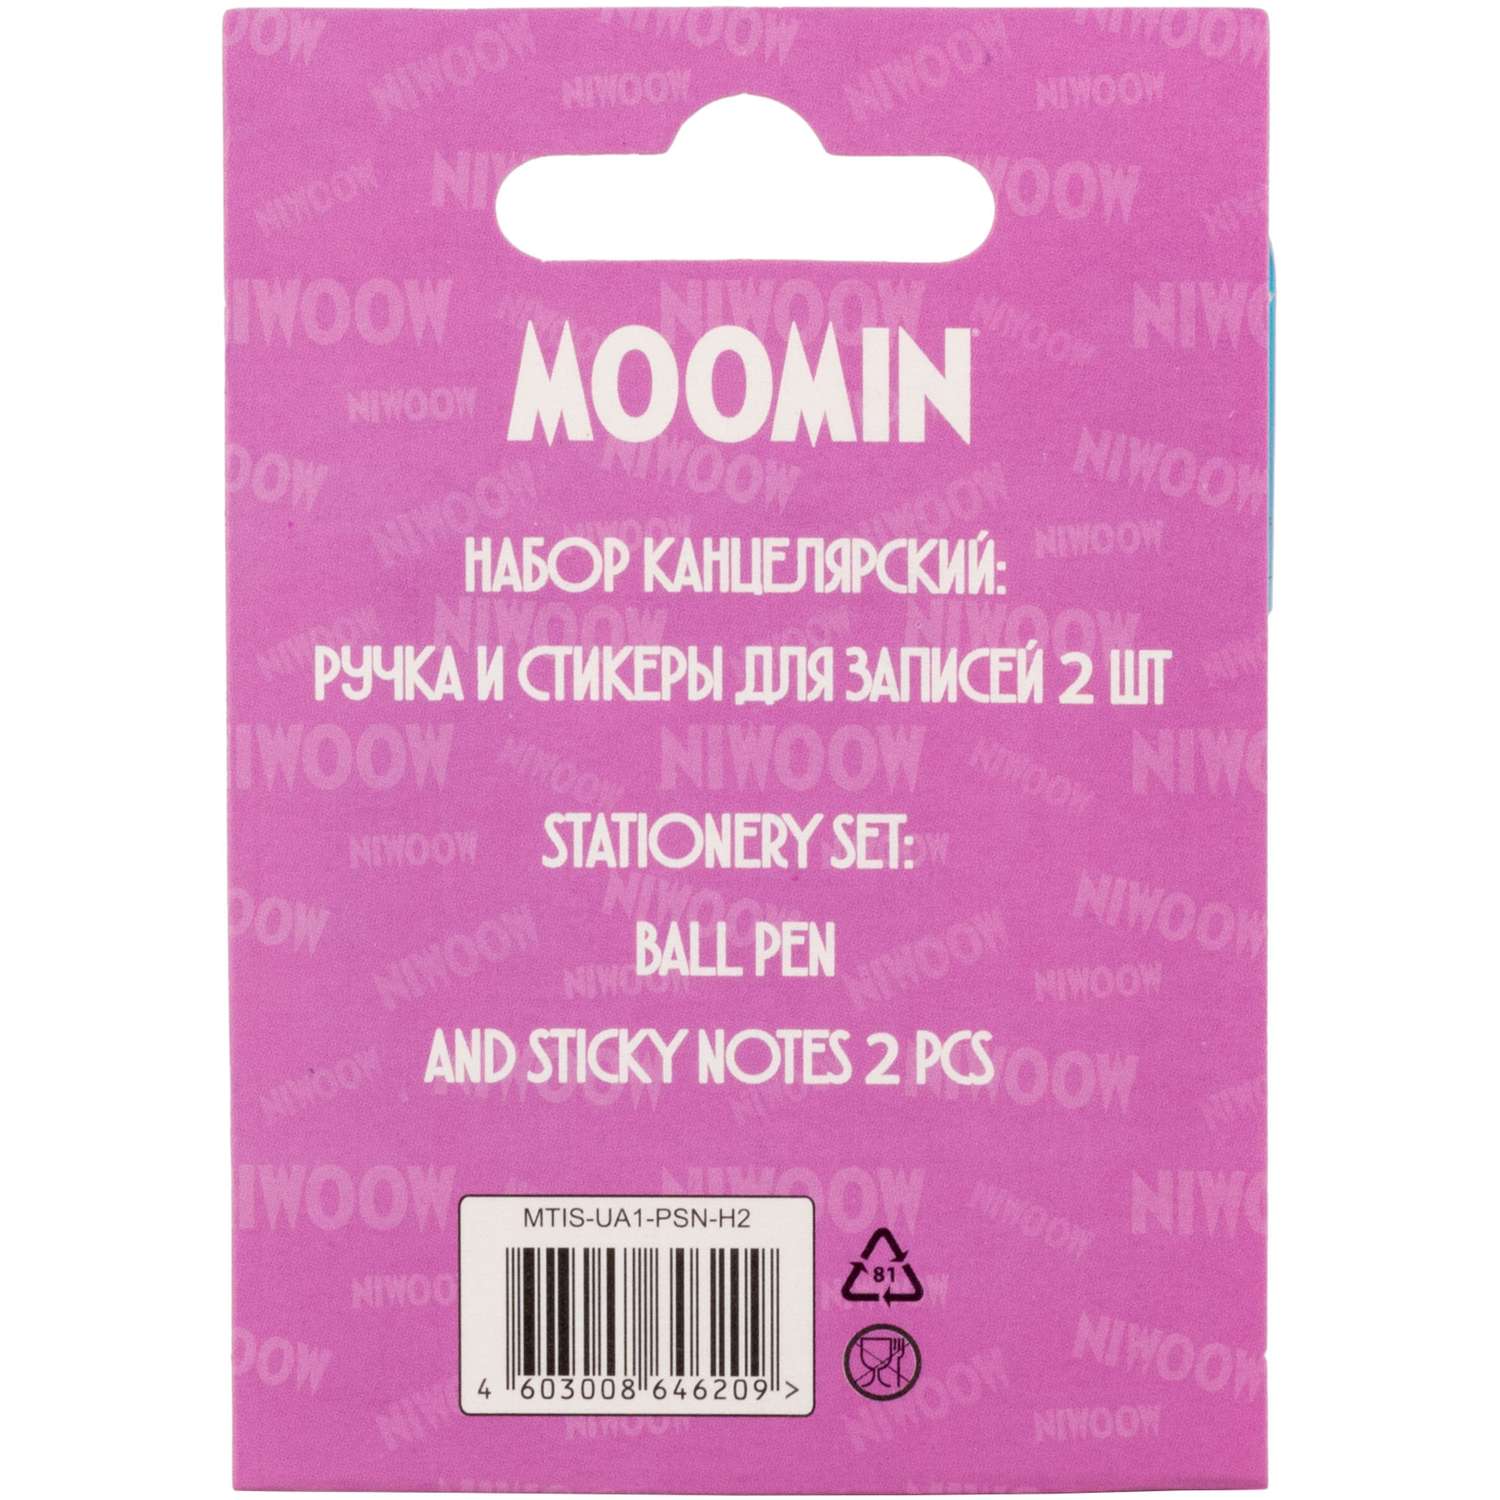 Набор канцелярский Moomin ручка шариковая +стикеры для записей 2шт MTIS-UA1-PSN-H2 - фото 3